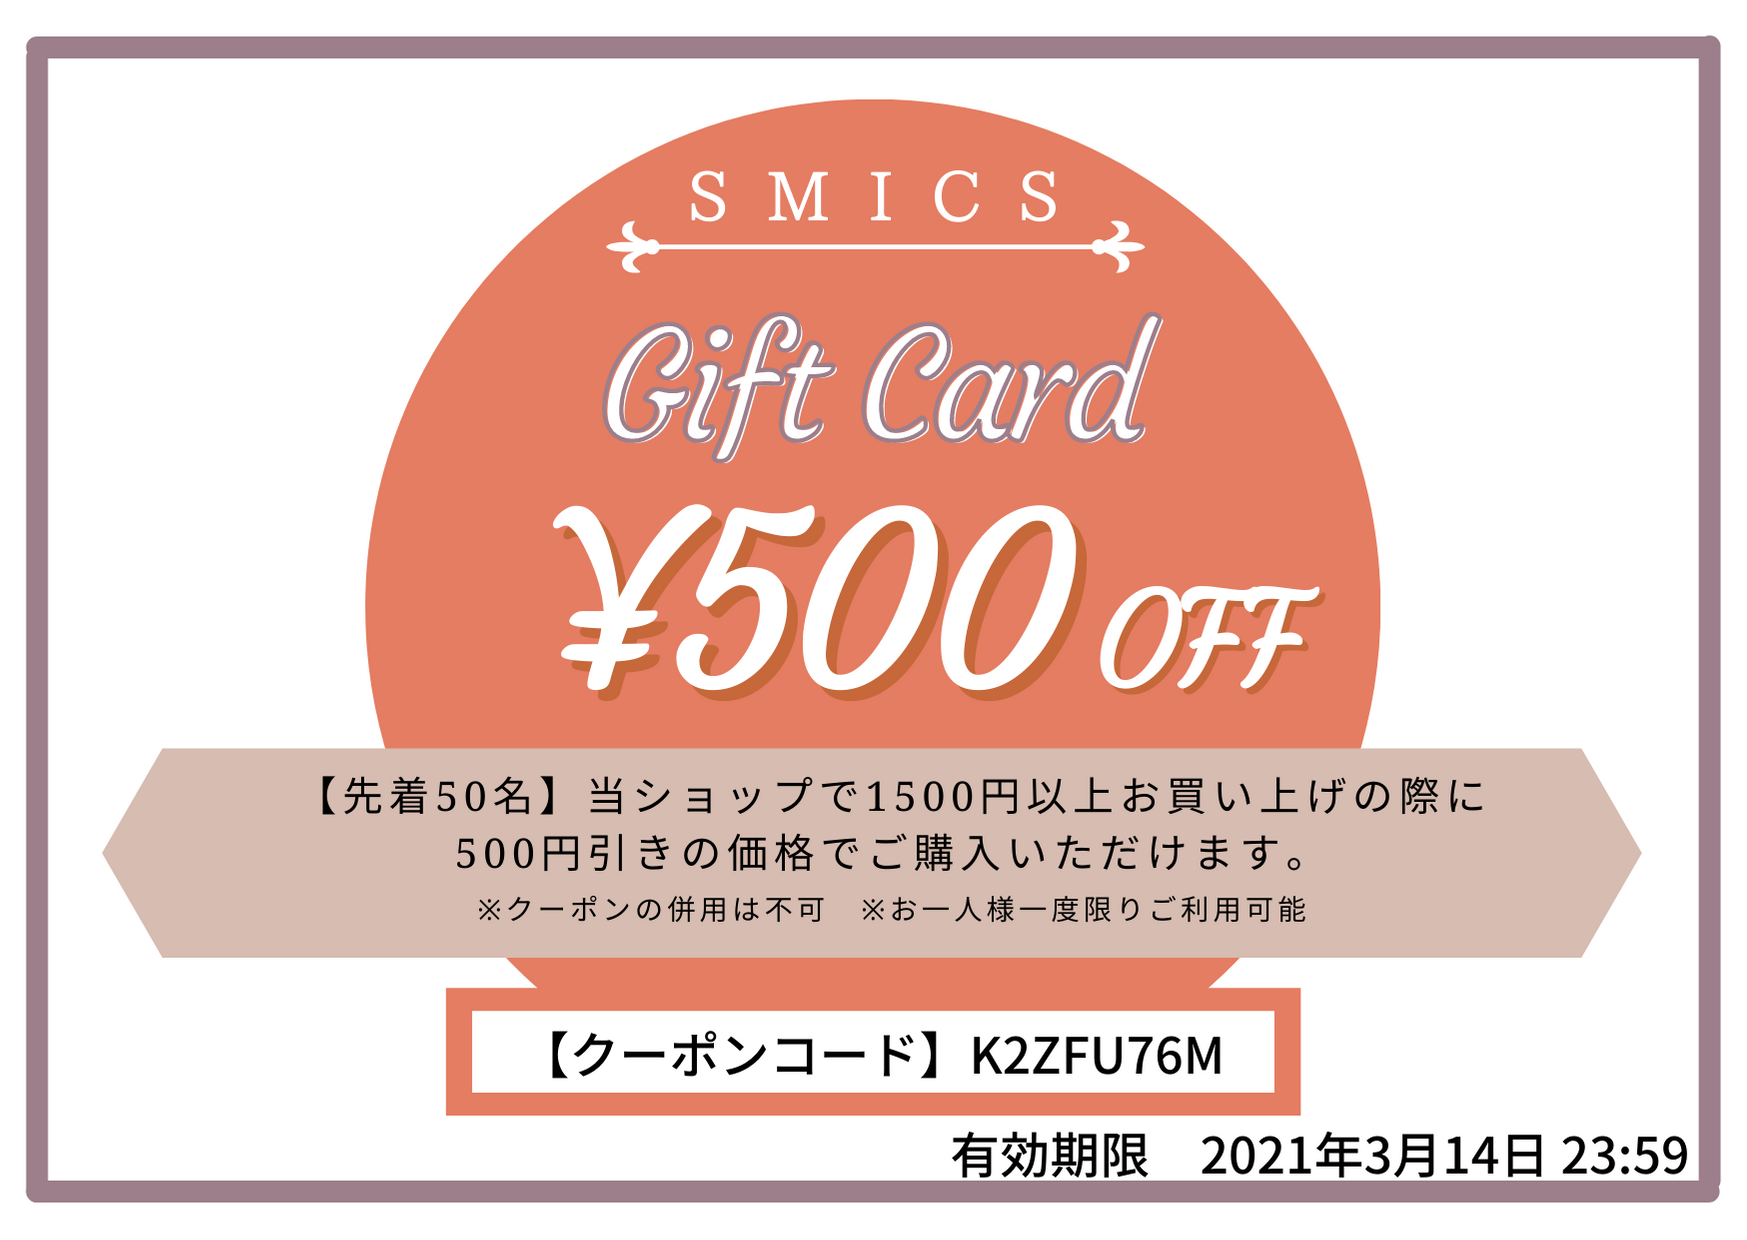 【SMICS】500円OFF！大感謝セール実施のお知らせ